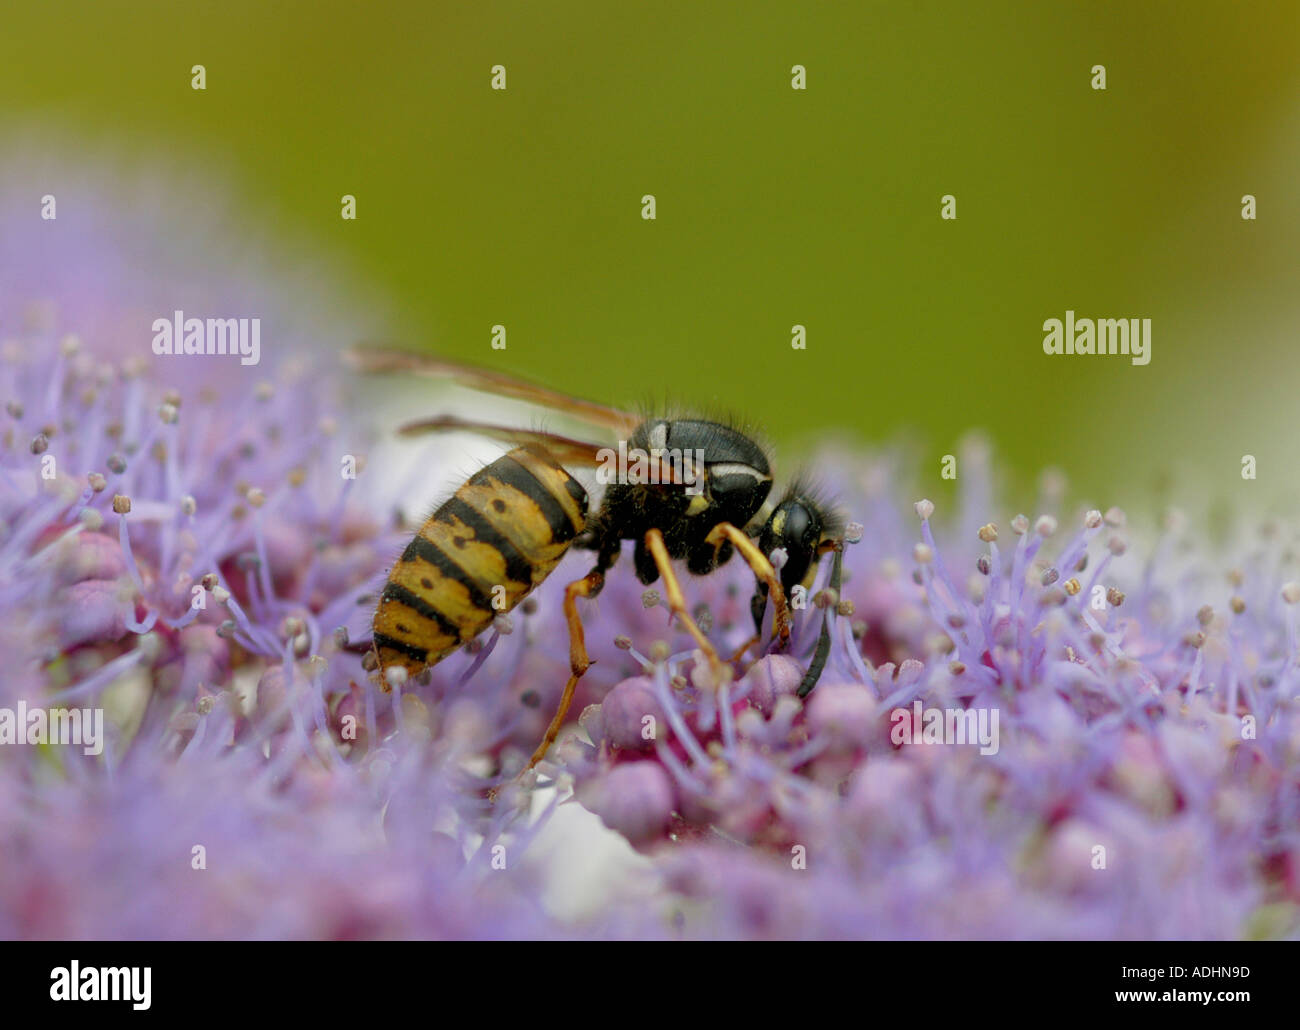 Common wasp feeding on Hydrangea Stock Photo